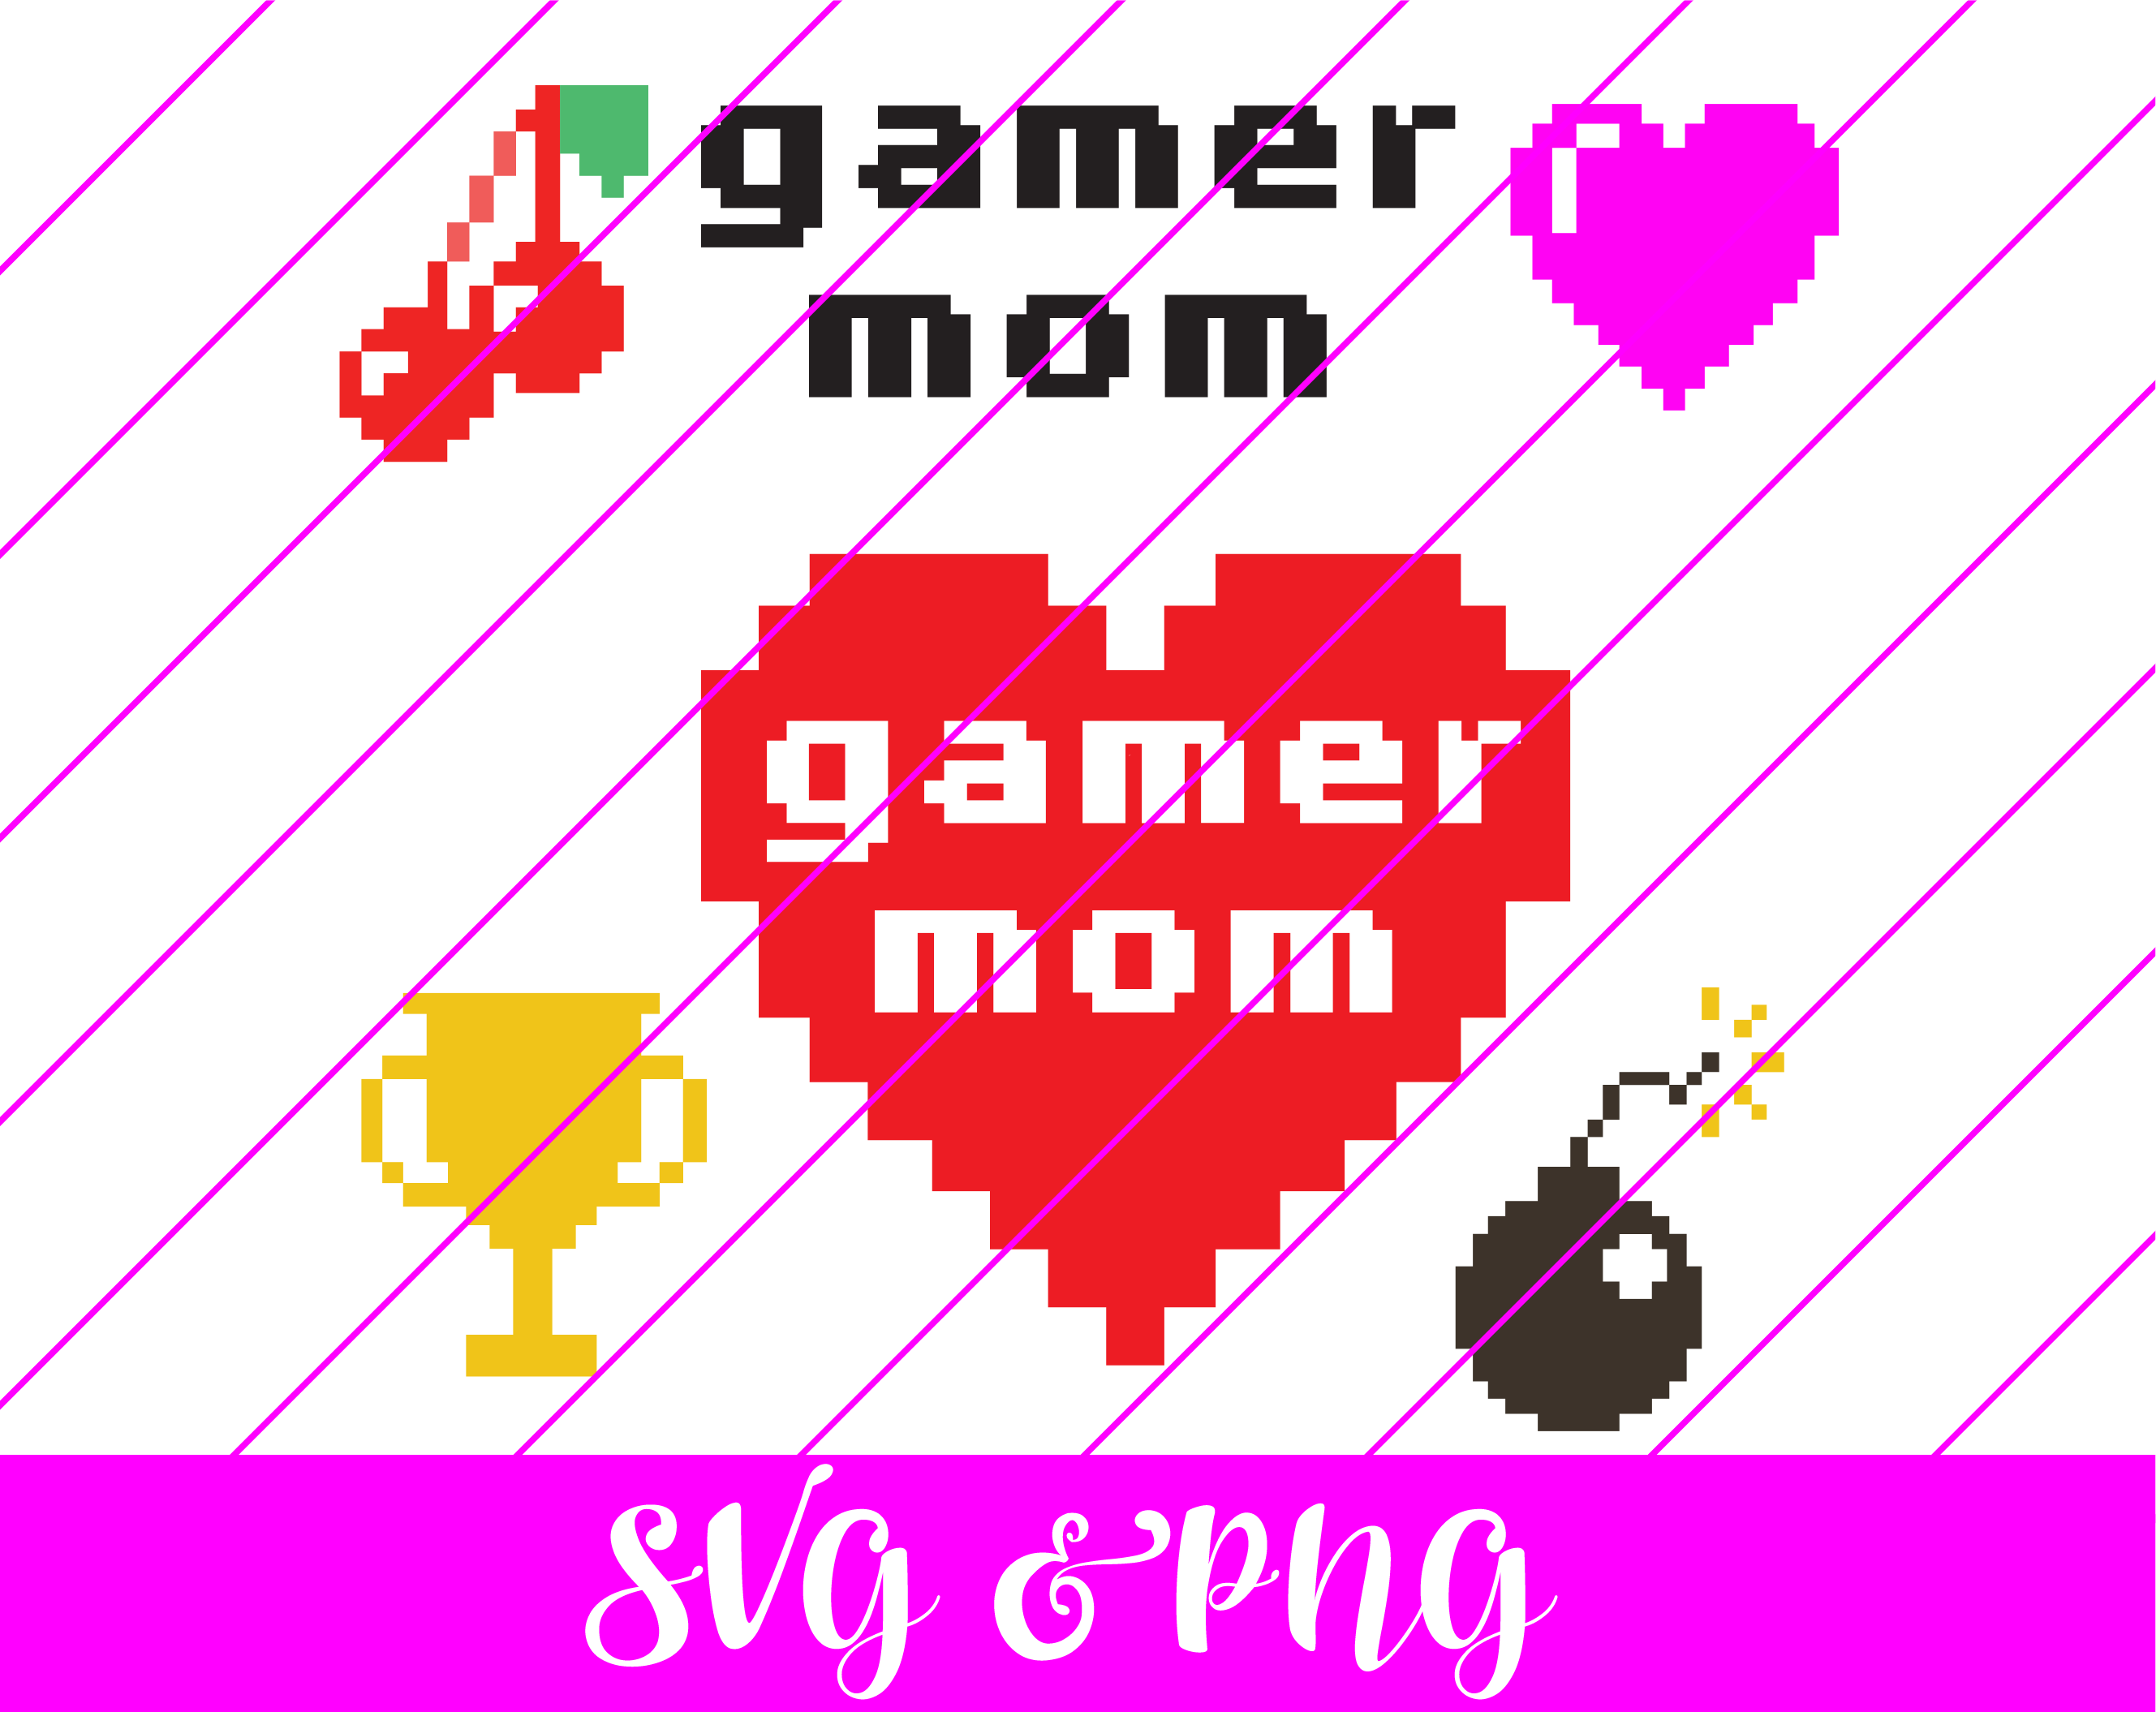 gamer mom svg